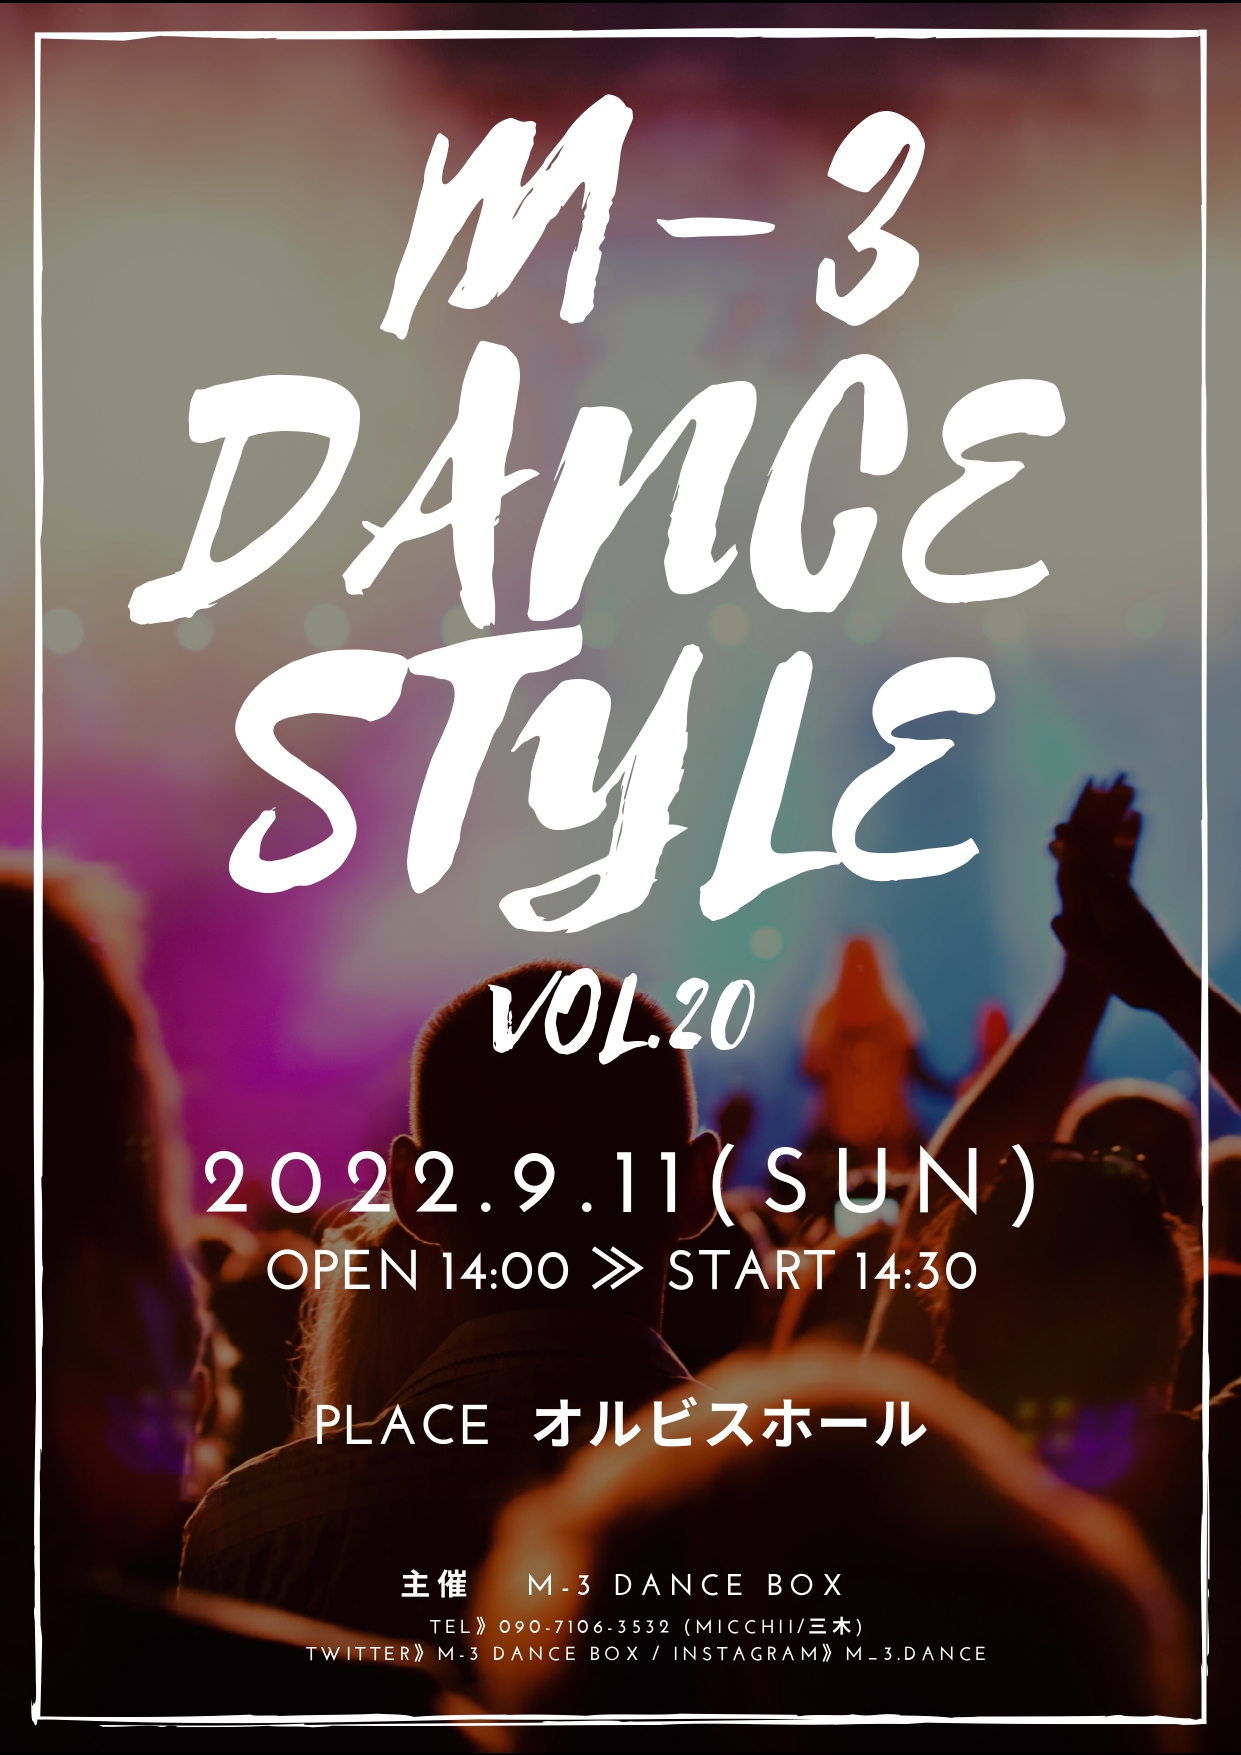 【オルビスホール情報】9/11(日) 「M-3 DANCE STYLE VOL.20」開催のお知らせ